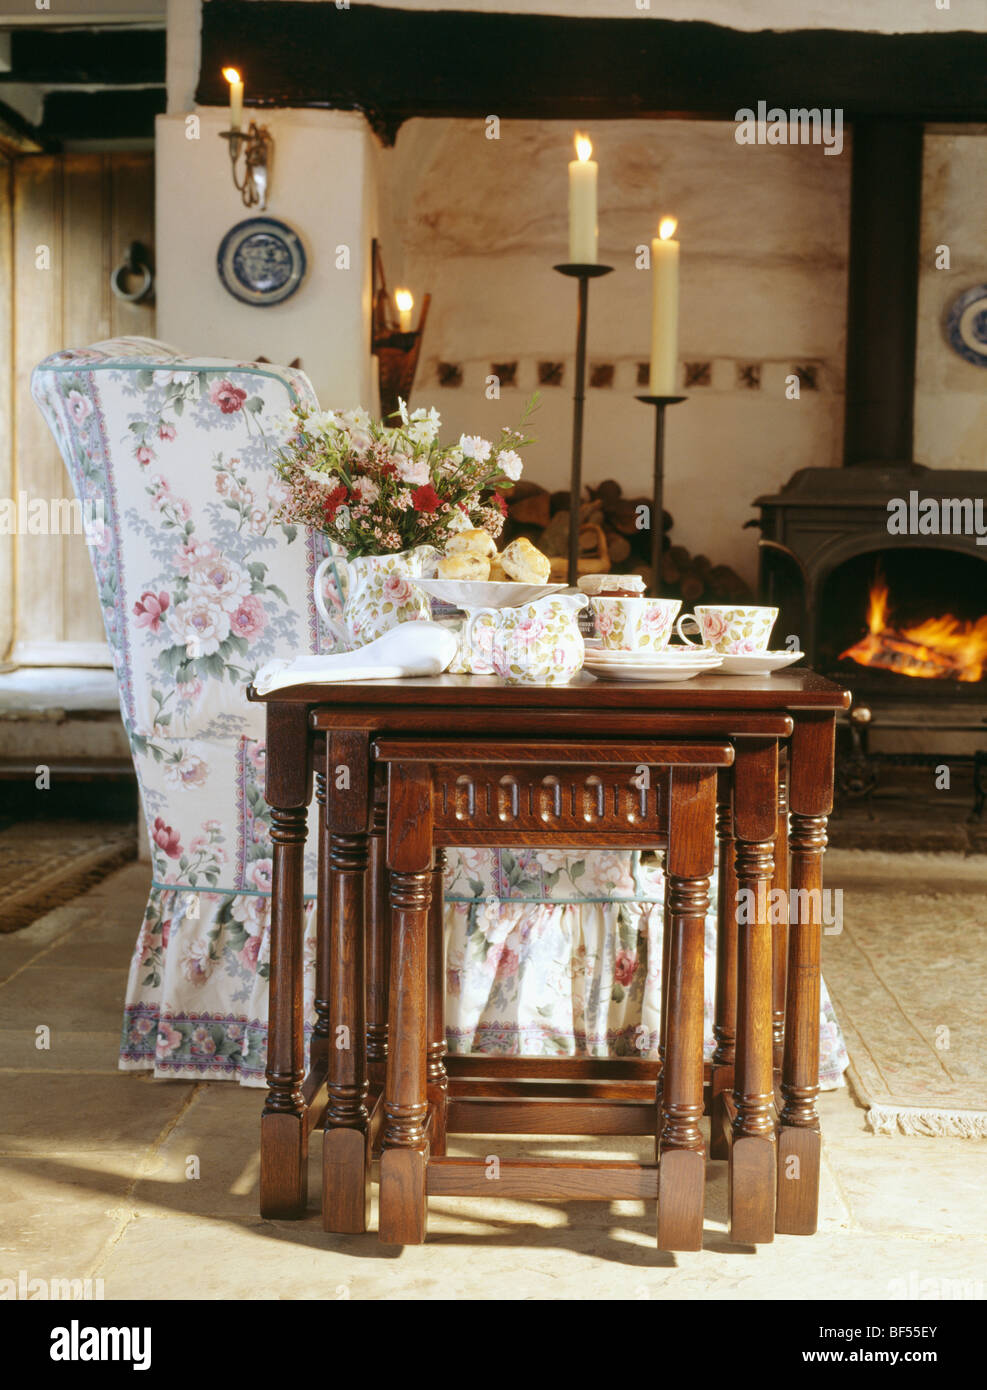 Oak nest-di-tabelle accanto al divano floreale in cottage soggiorno con le candele accese in alti candelabri accanto alla stufa nero Foto Stock